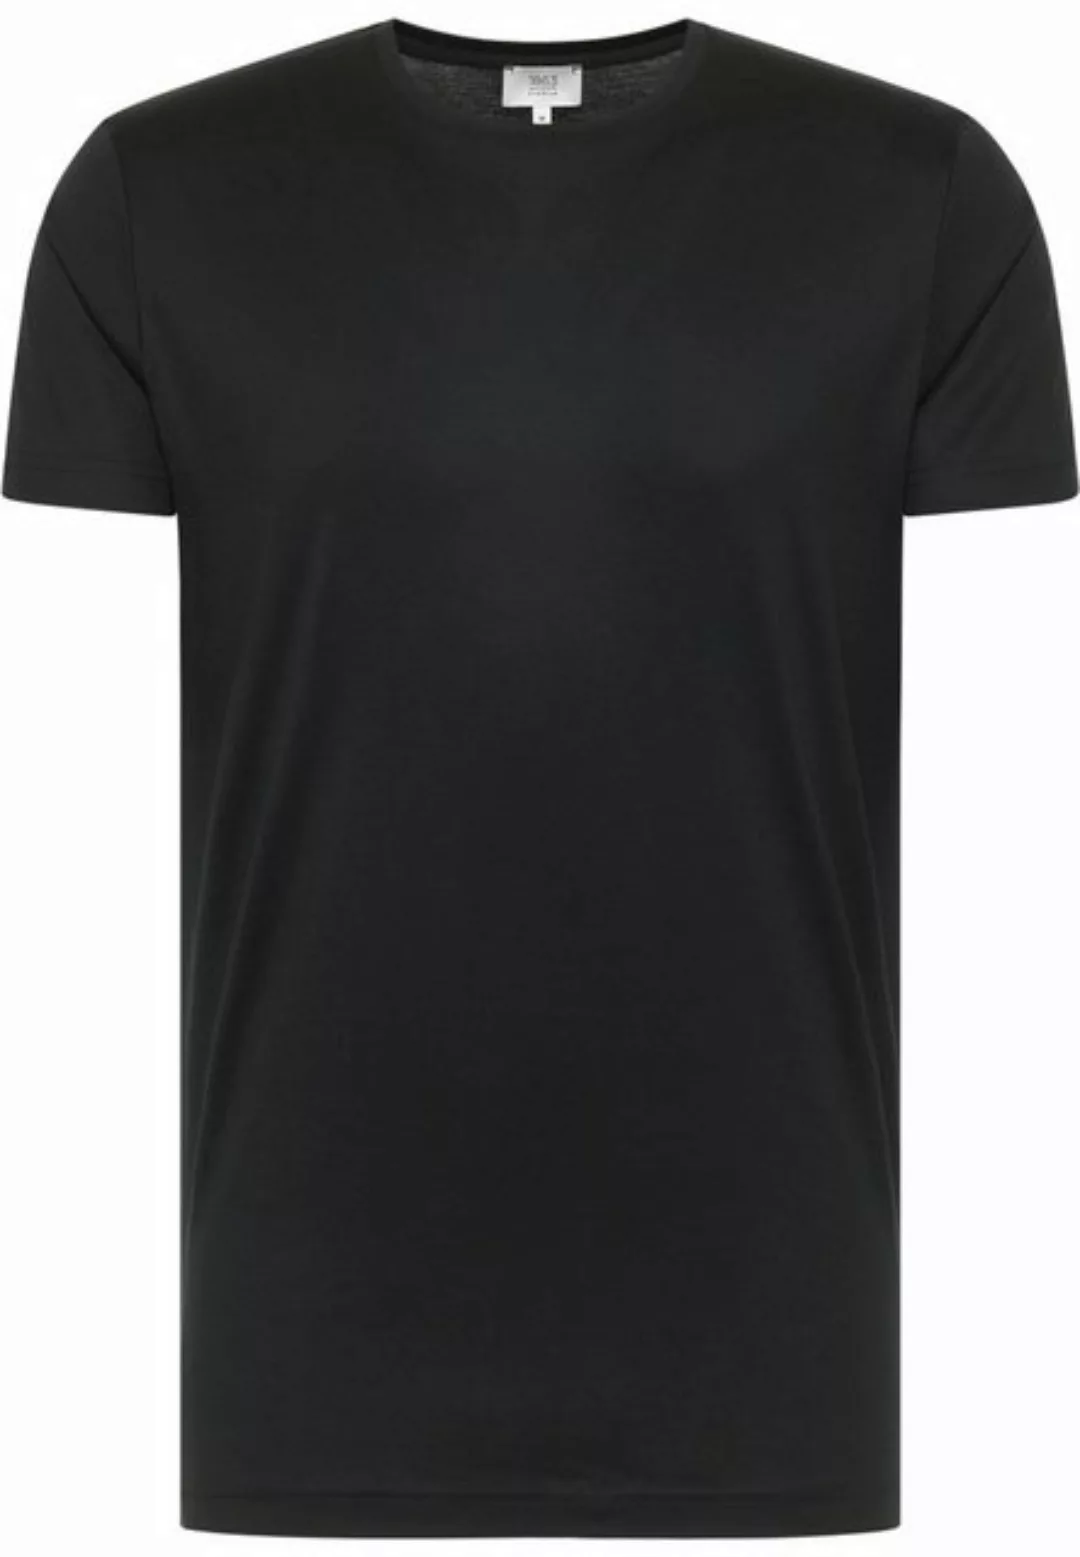 Pierre Cardin Klassische Bluse 1863 by ETERNA Kurzarm T-Shirt schwarz 887-3 günstig online kaufen